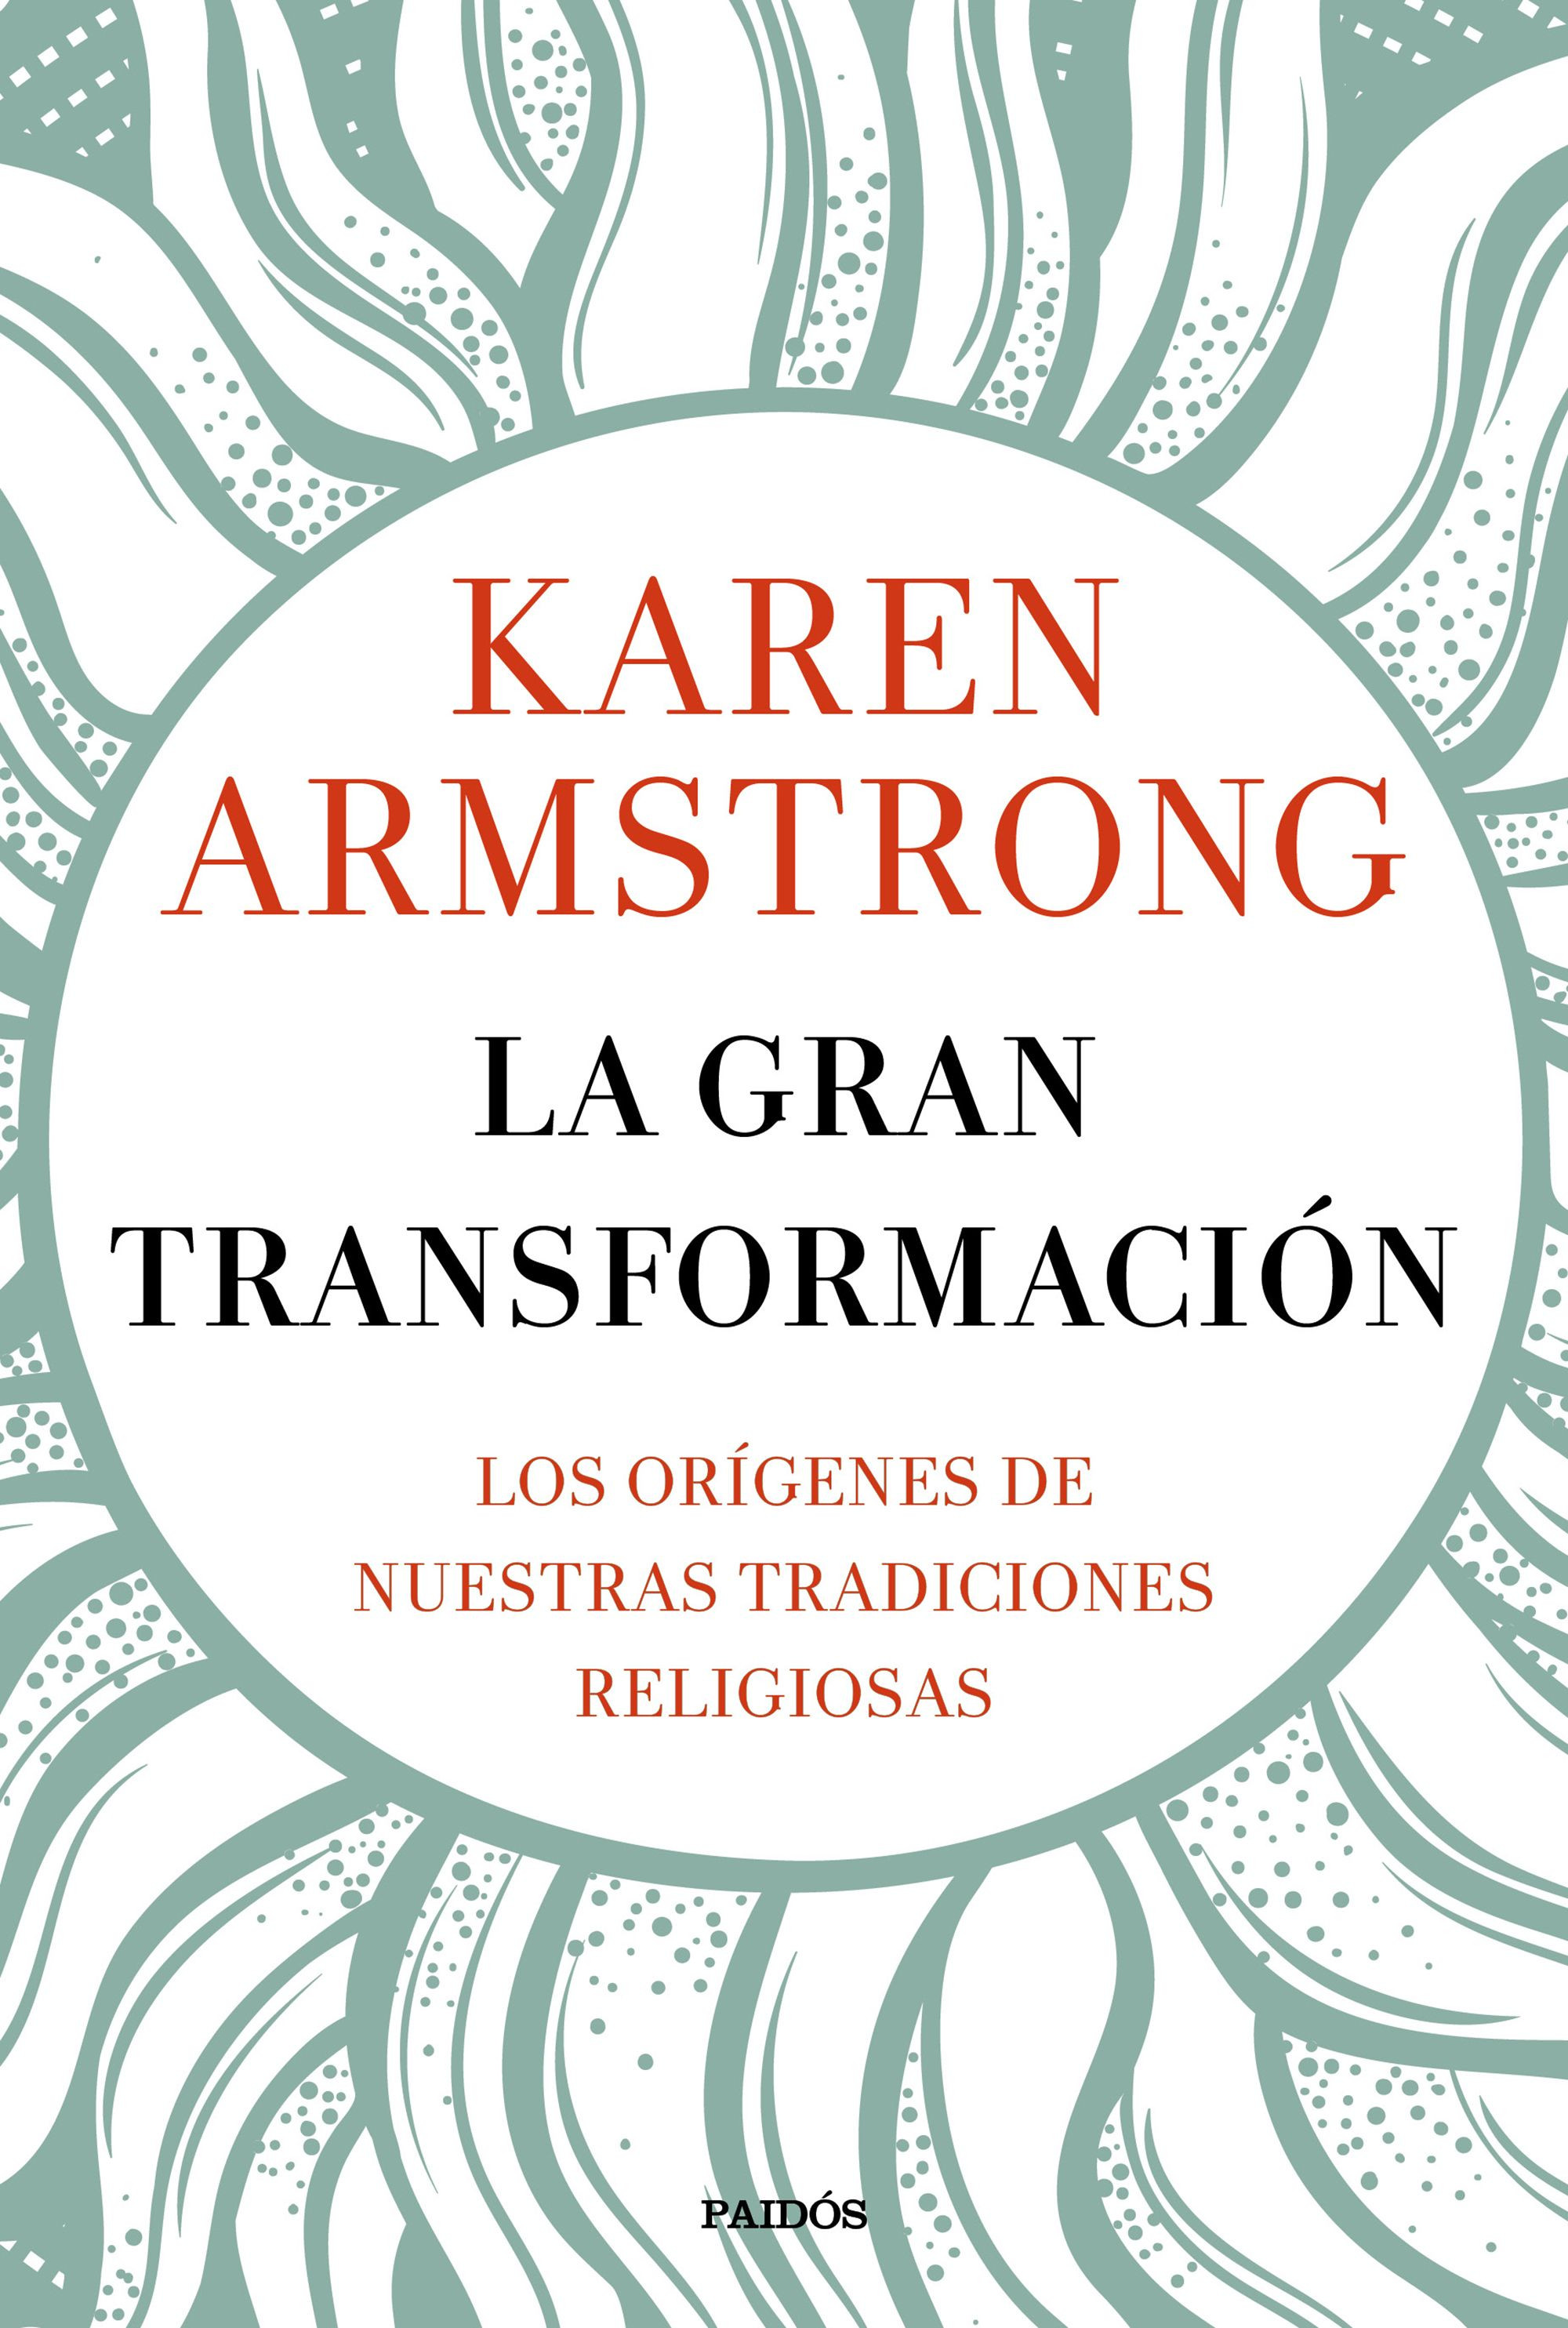 Imagen La gran transformación. Karen Armstrong 1